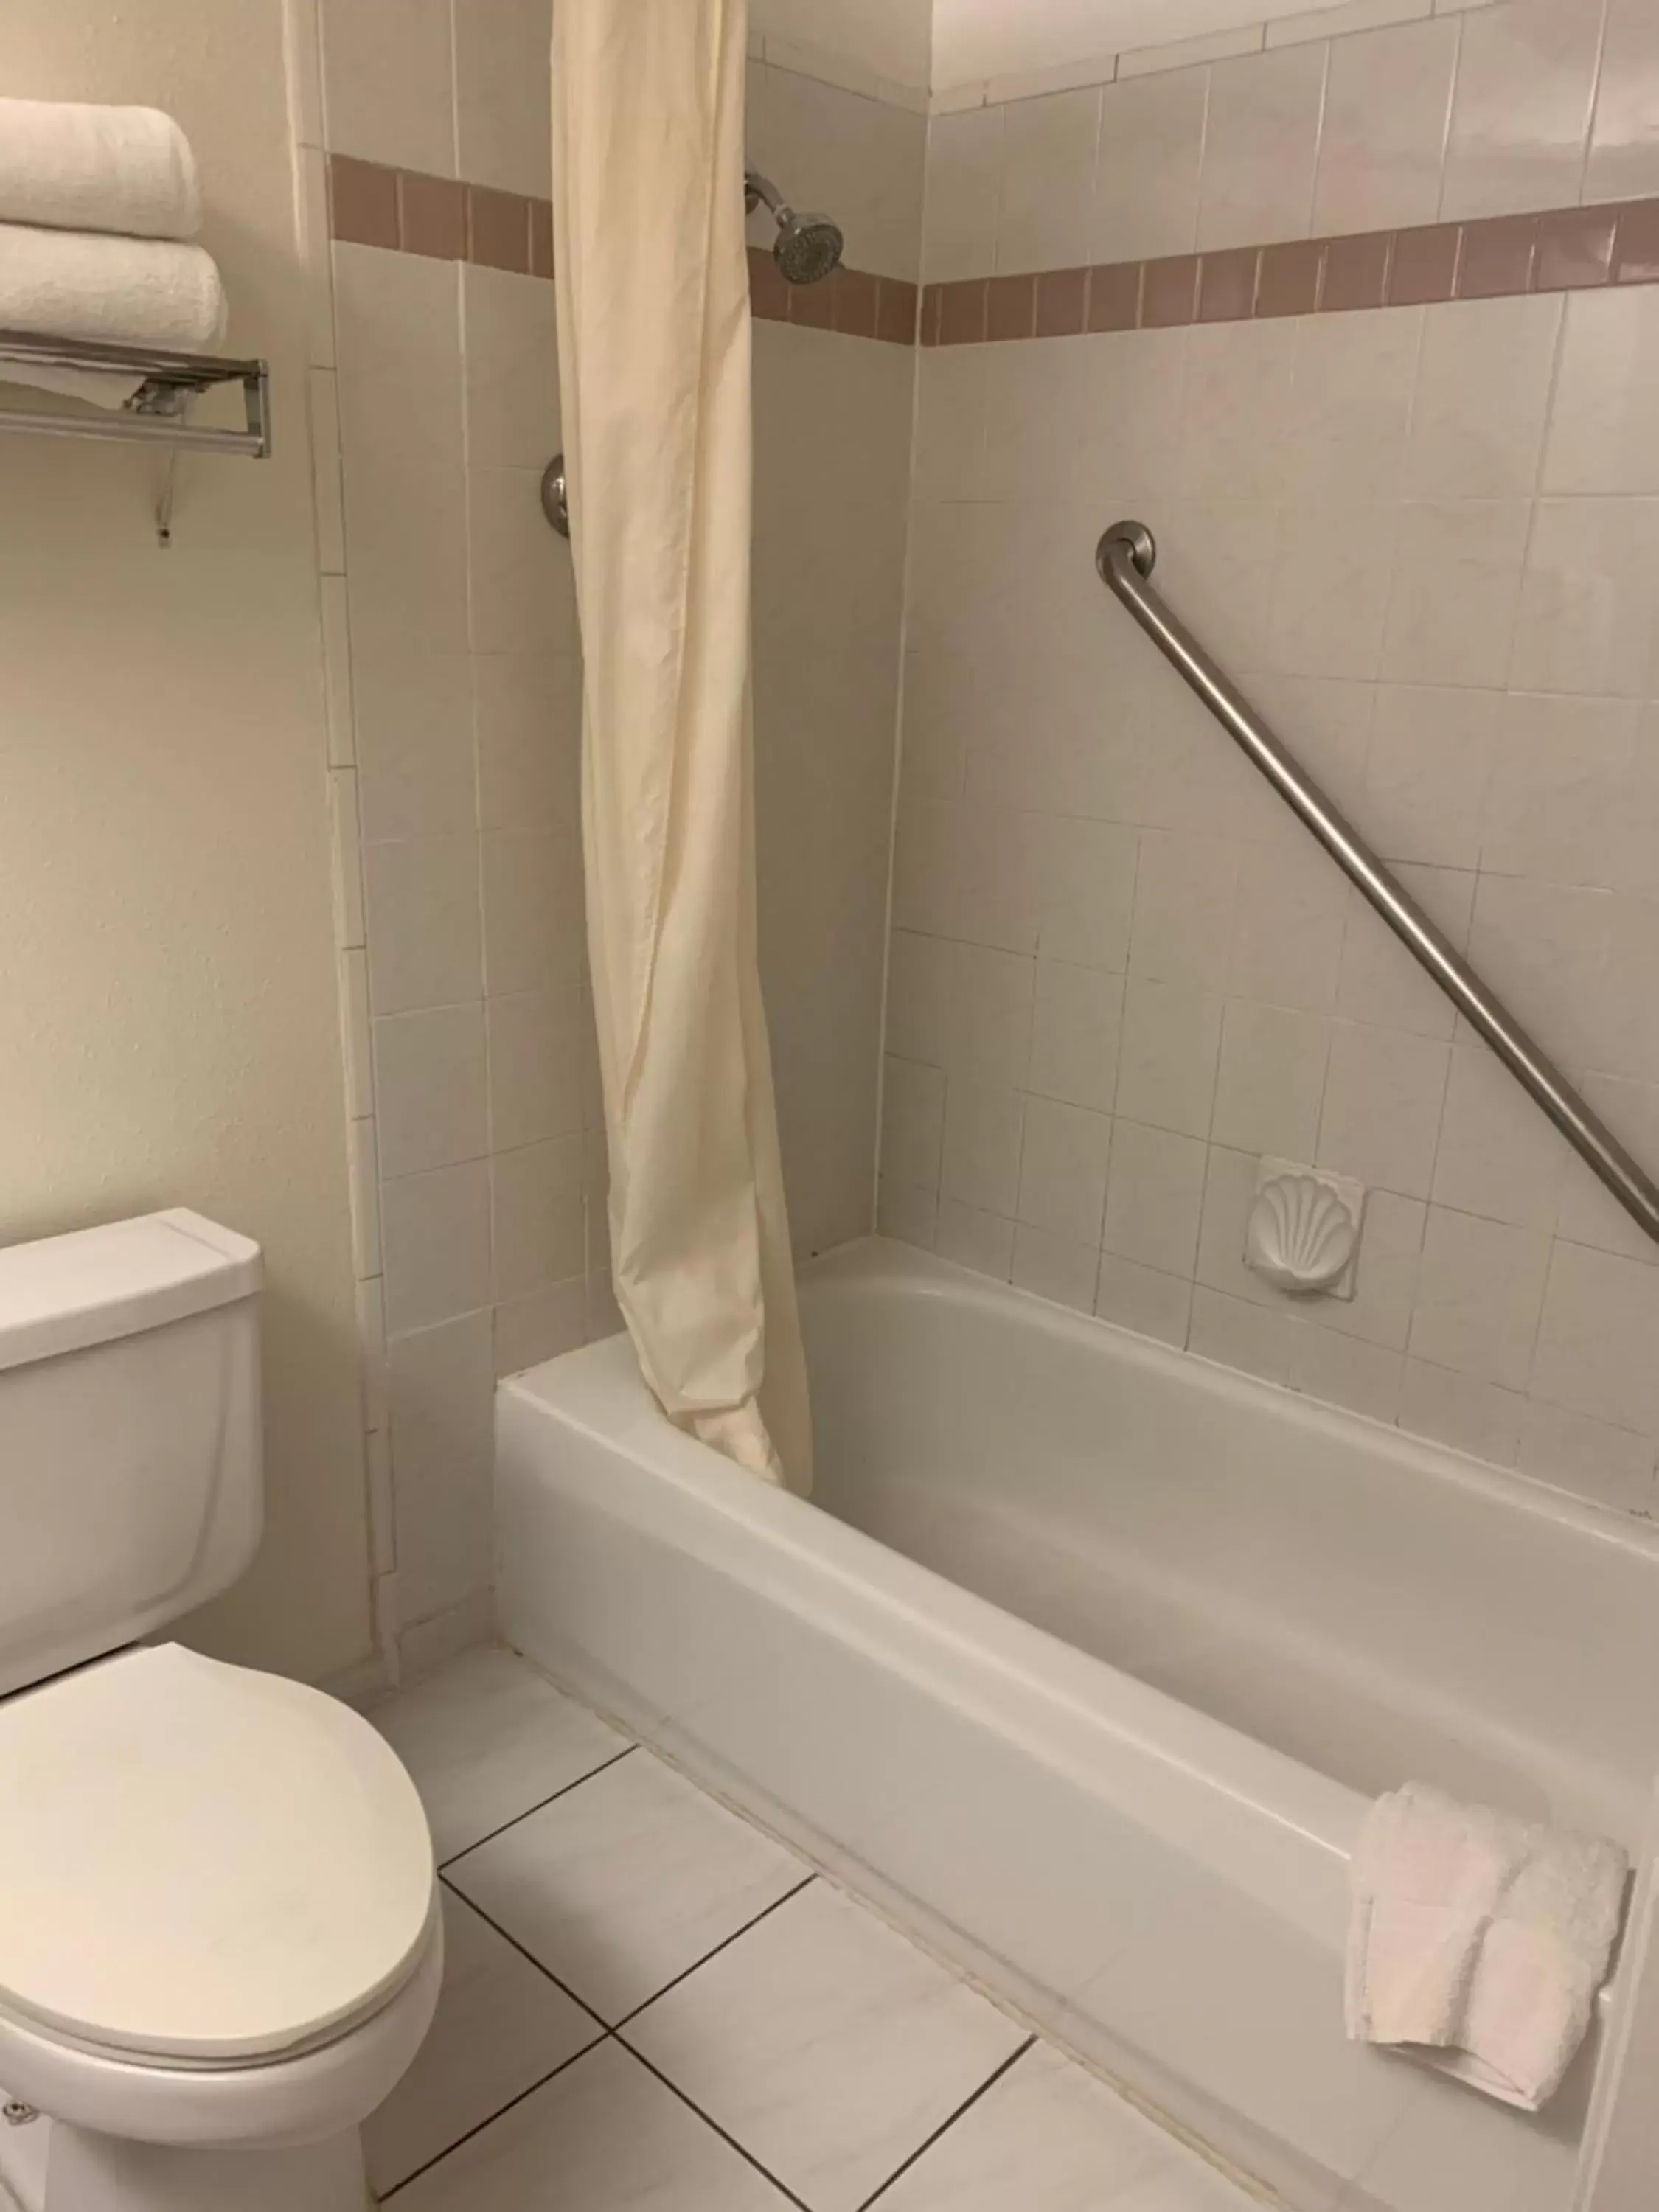 Bathroom in Miracle Springs Resort and Spa